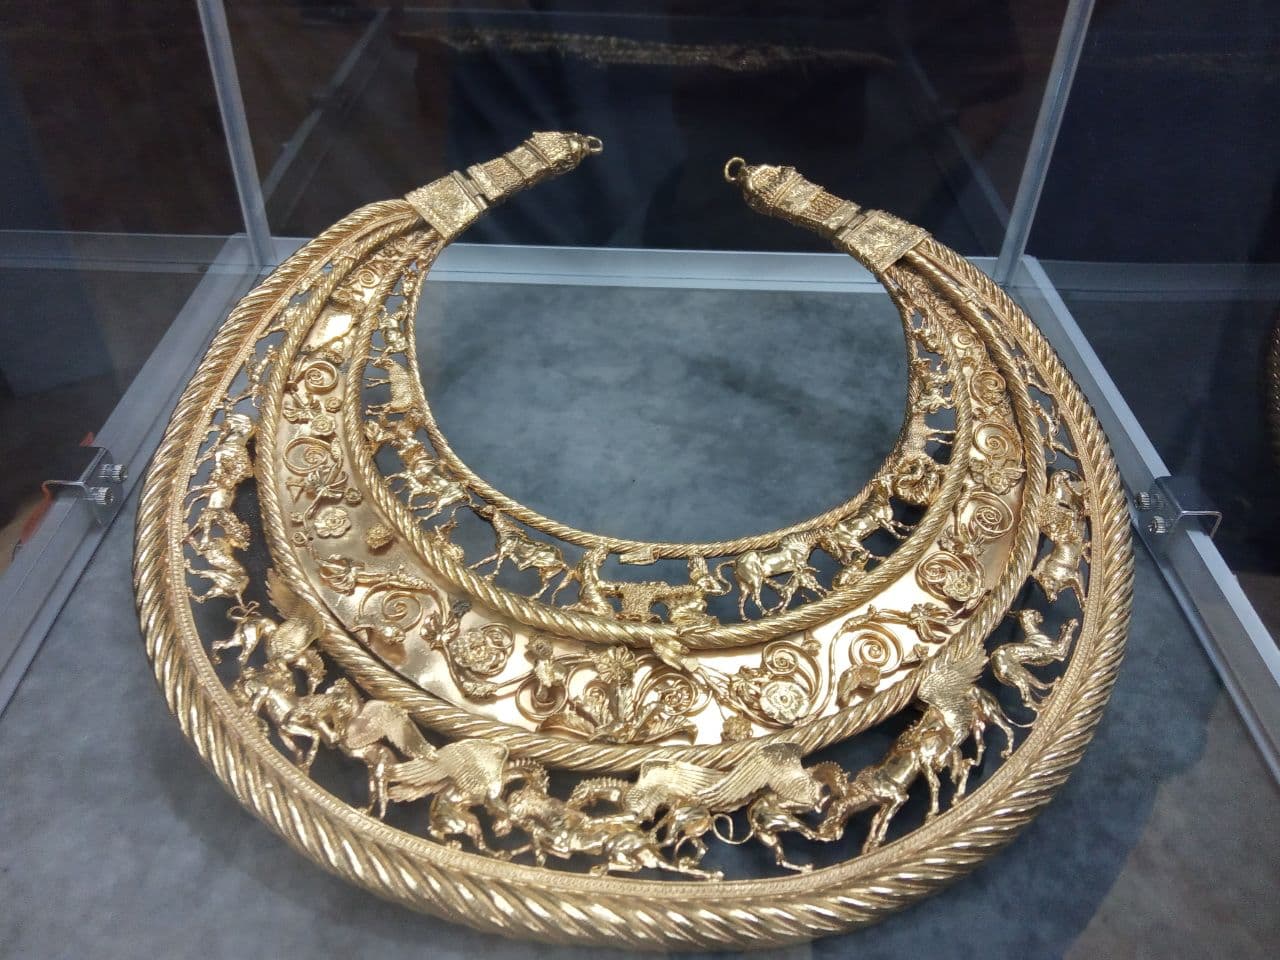 Як охороняють скіфське золото у Маріуполі